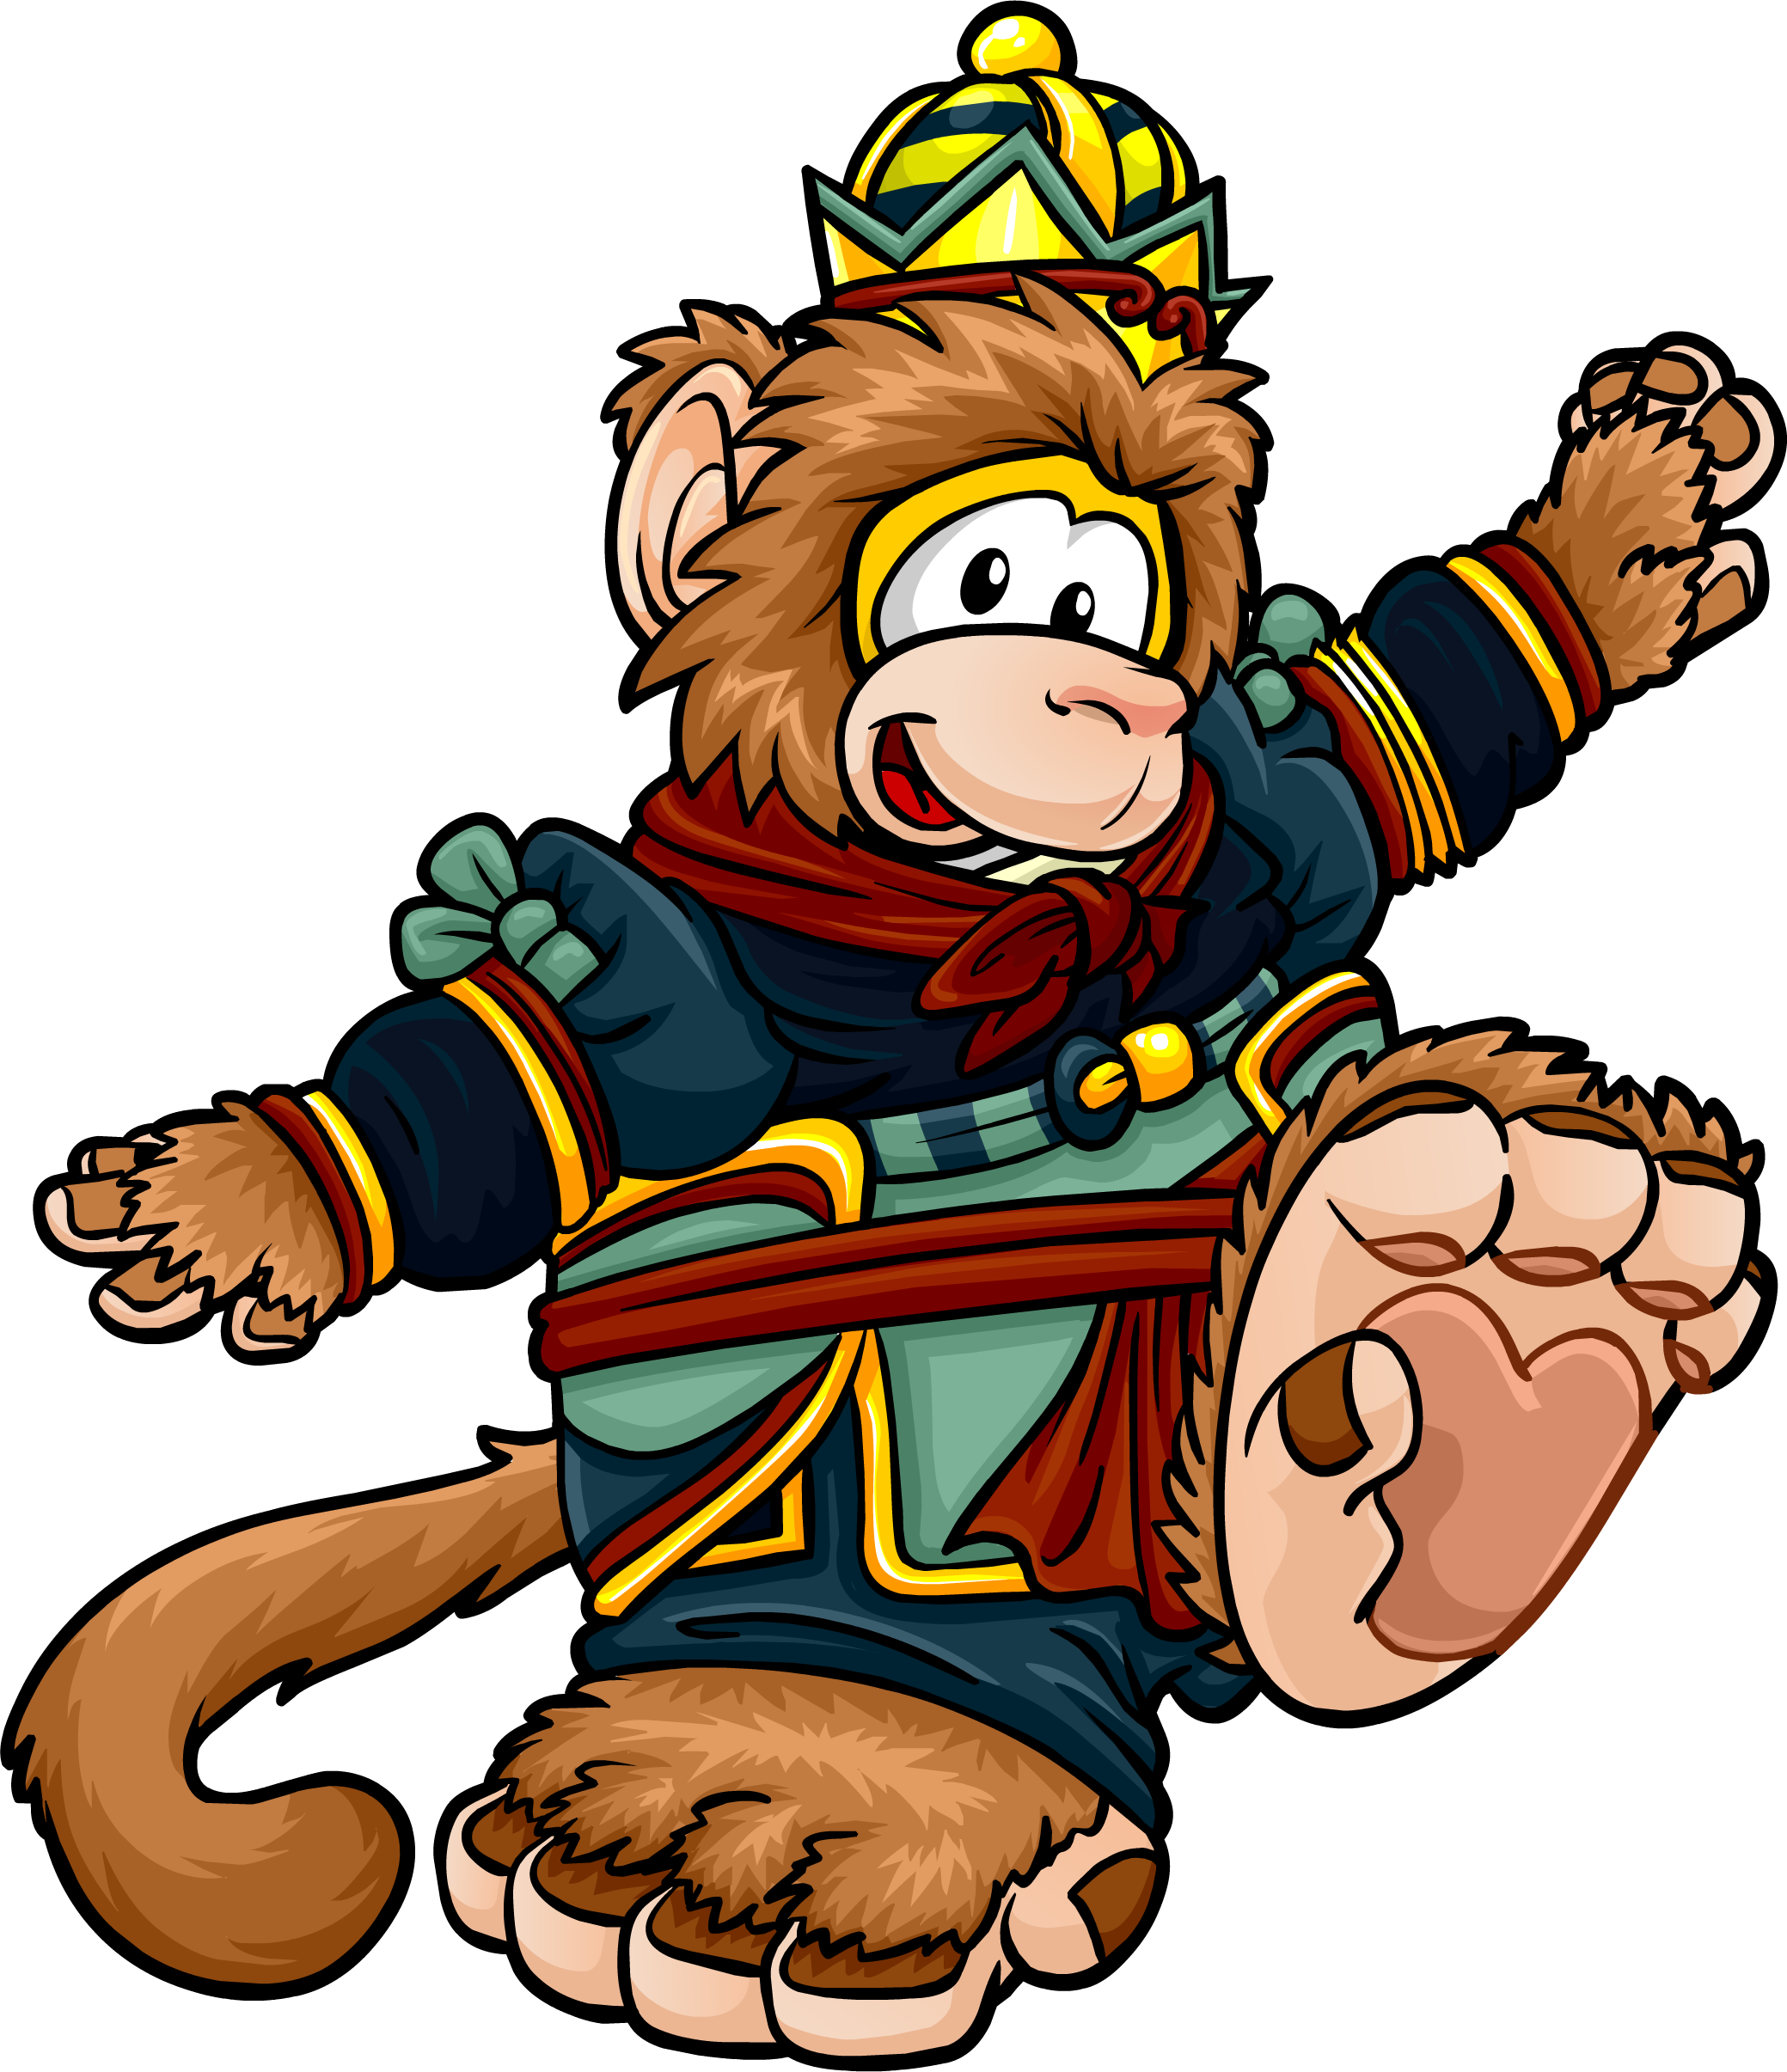 Rally Monkey - Wikipedia